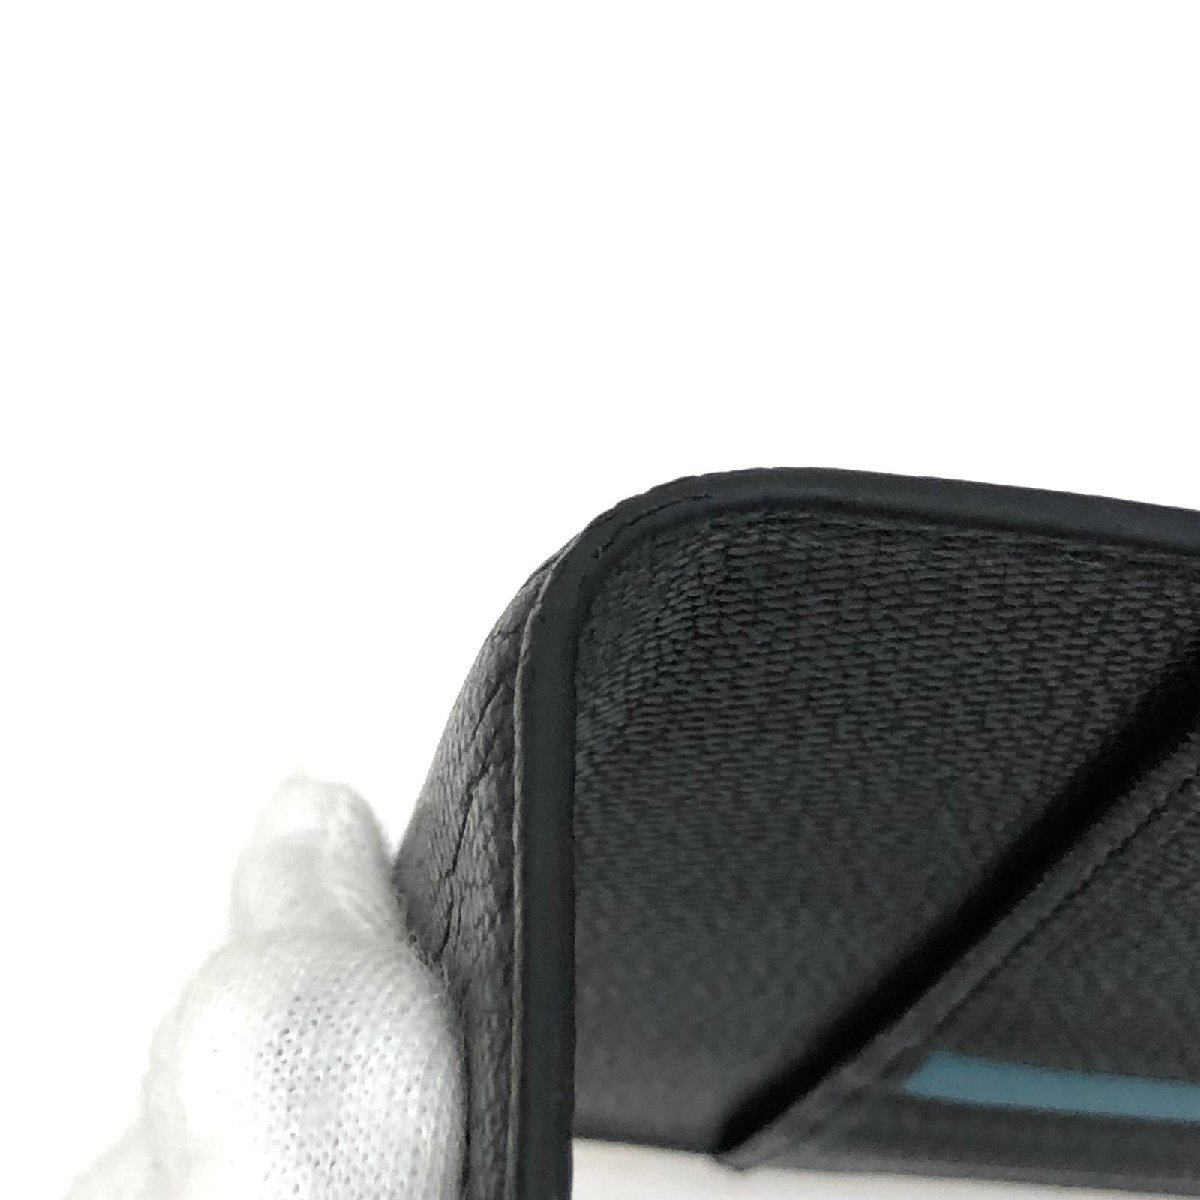 中古 TIFFANY&Co. ティファニー パスポートカバー 手帳カバー レザー ブラック ロゴプリント シンプル イタリア製 RLV1812M_画像5